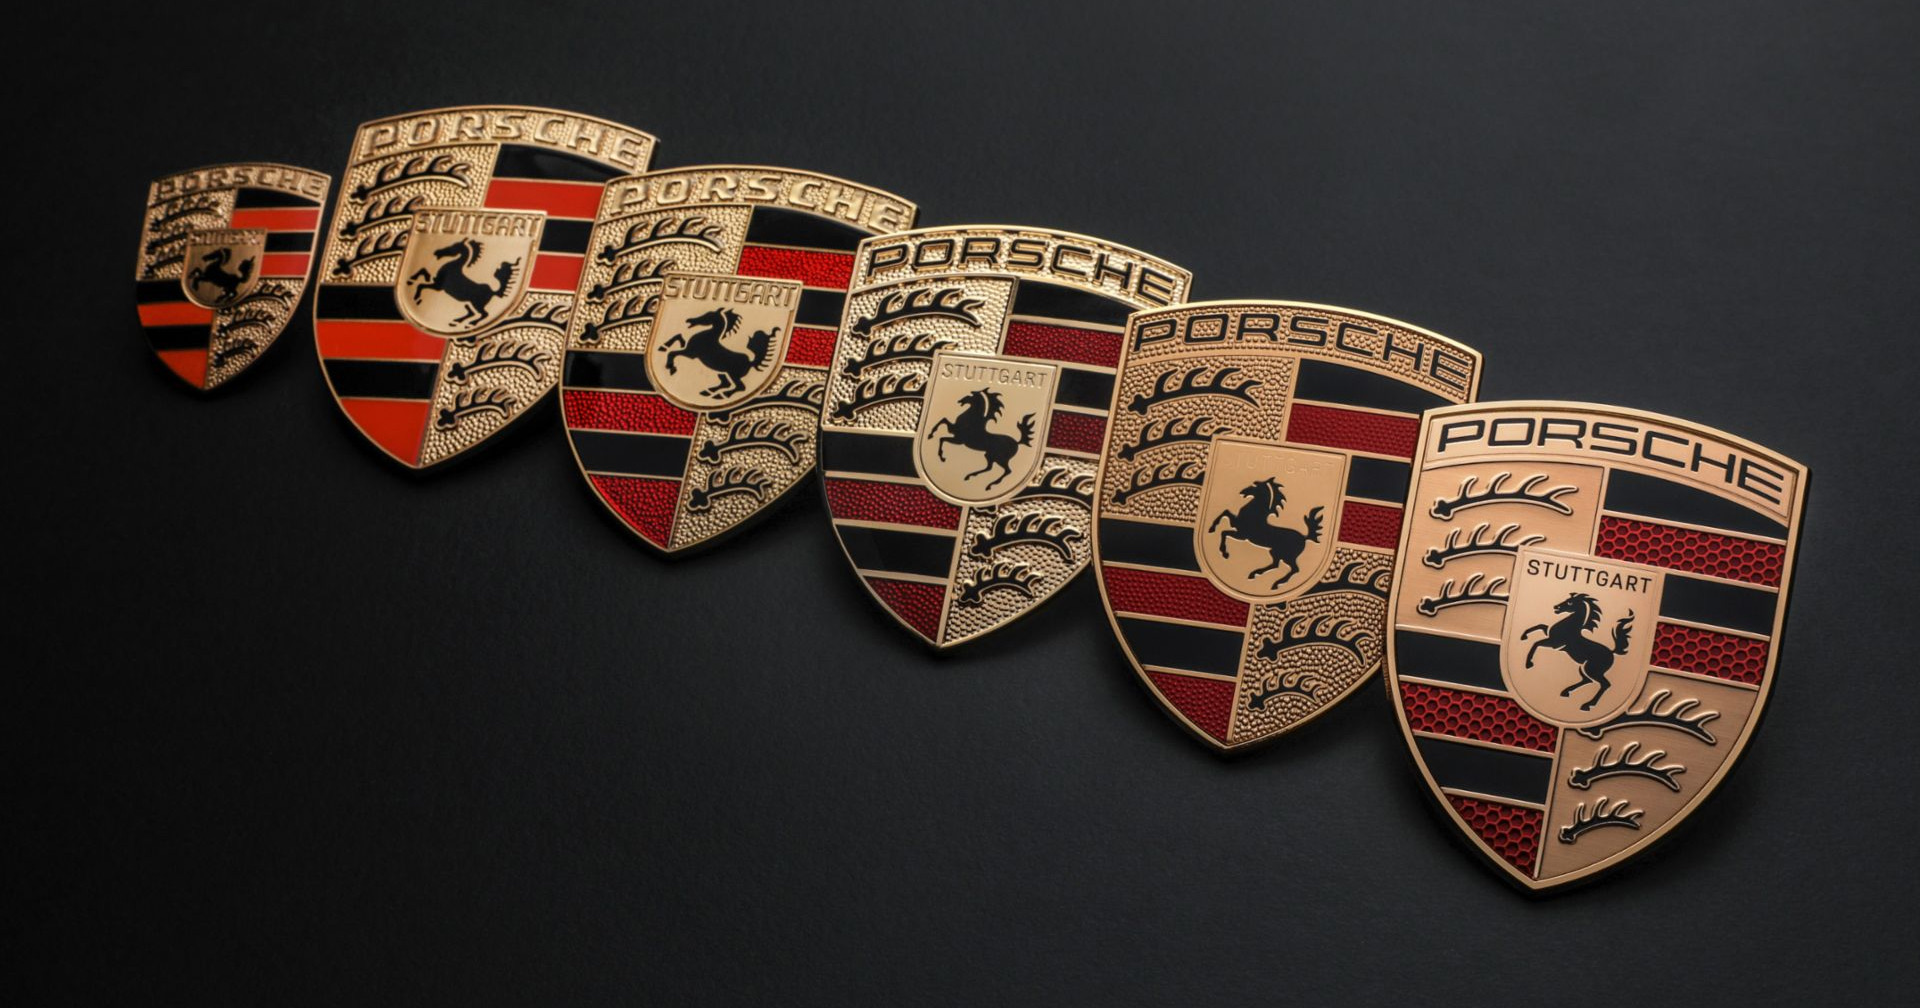 ครบรอบ 75 ปี Porsche ปรับลุคตราสัญลักษณ์ใหม่ทันสมัยมากยิ่งขึ้น